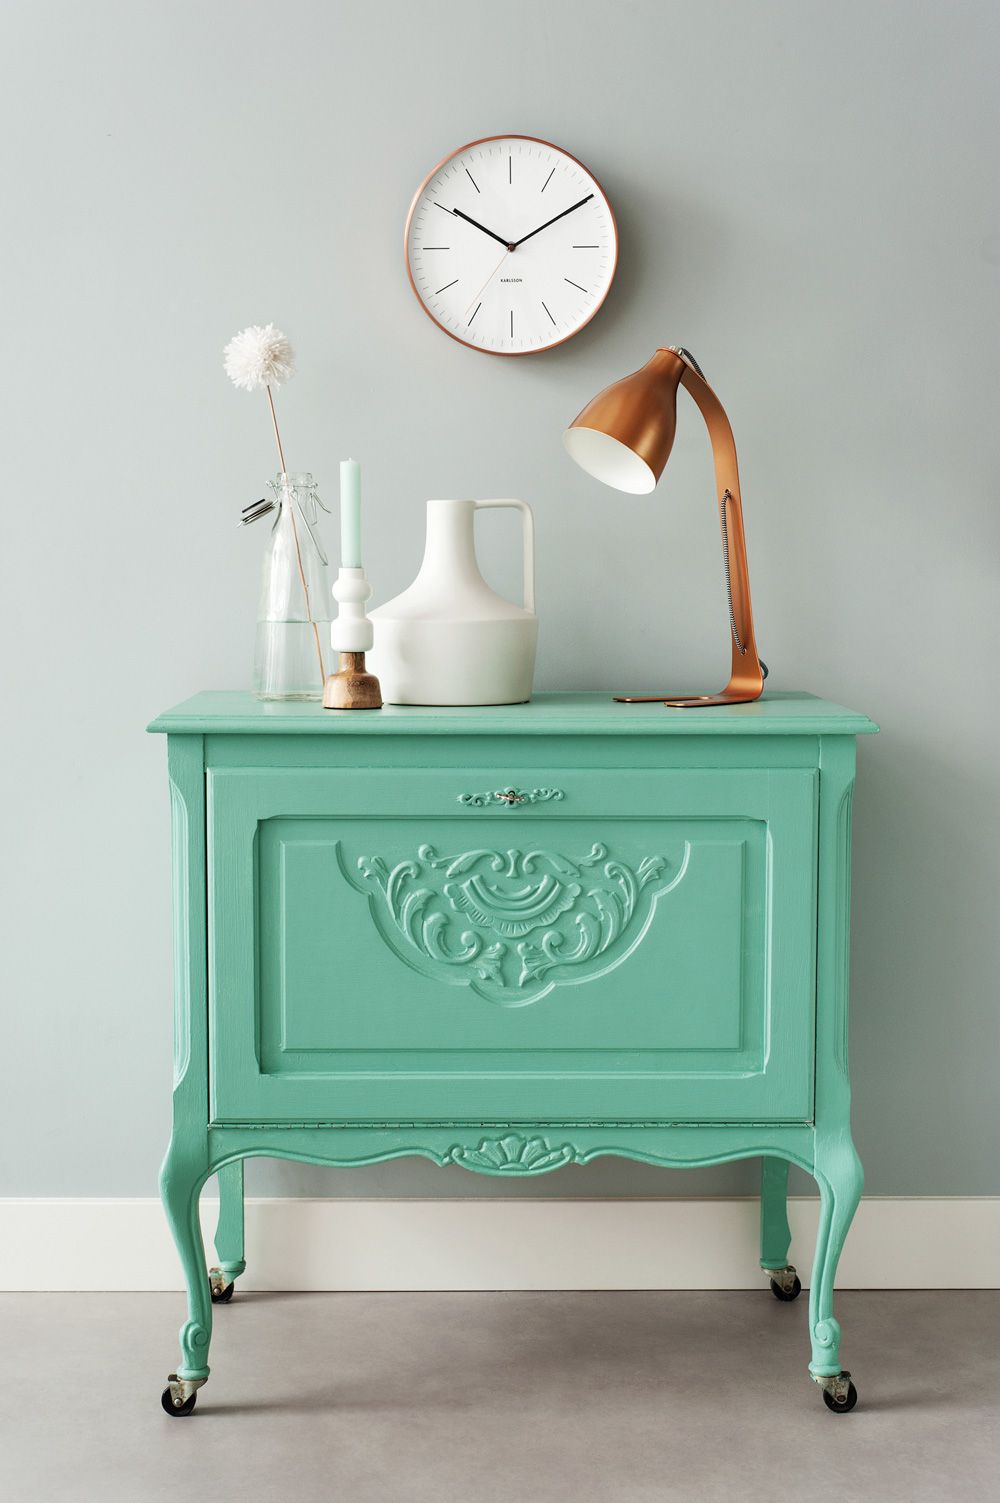 pequeño armario pintado en color verde menta, ideas de muebles en estilo vintage para tu salón, decoración salón vintage